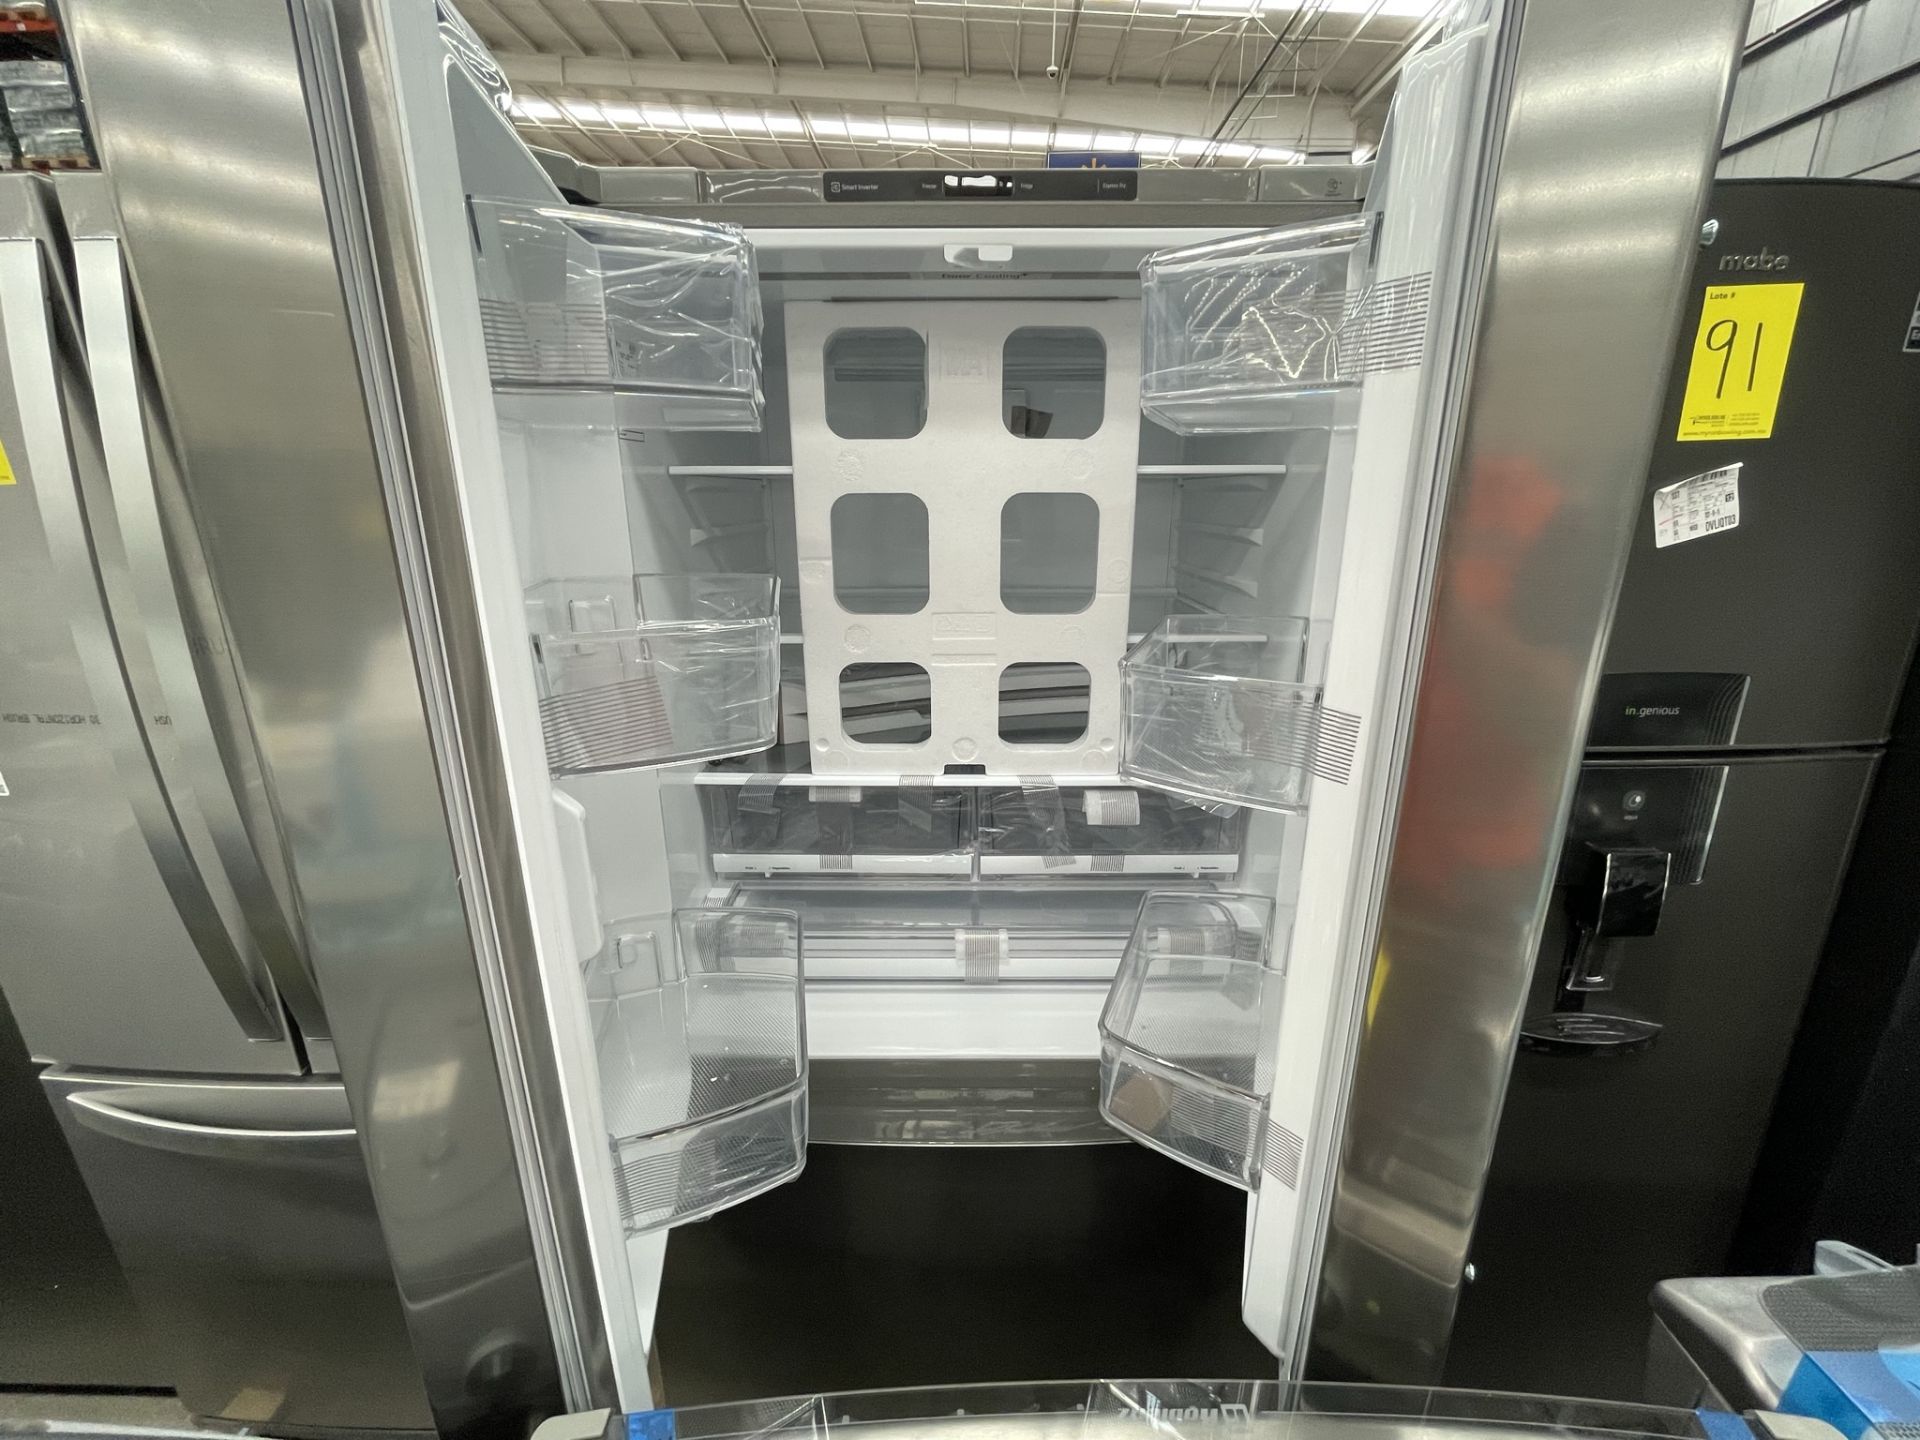 (EQUIPO NUEVO) 1 Refrigerador Marca LG, Modelo GTM29BP, Serie V24961, Color GRIS, LB-619780; (Nuevo - Image 8 of 9